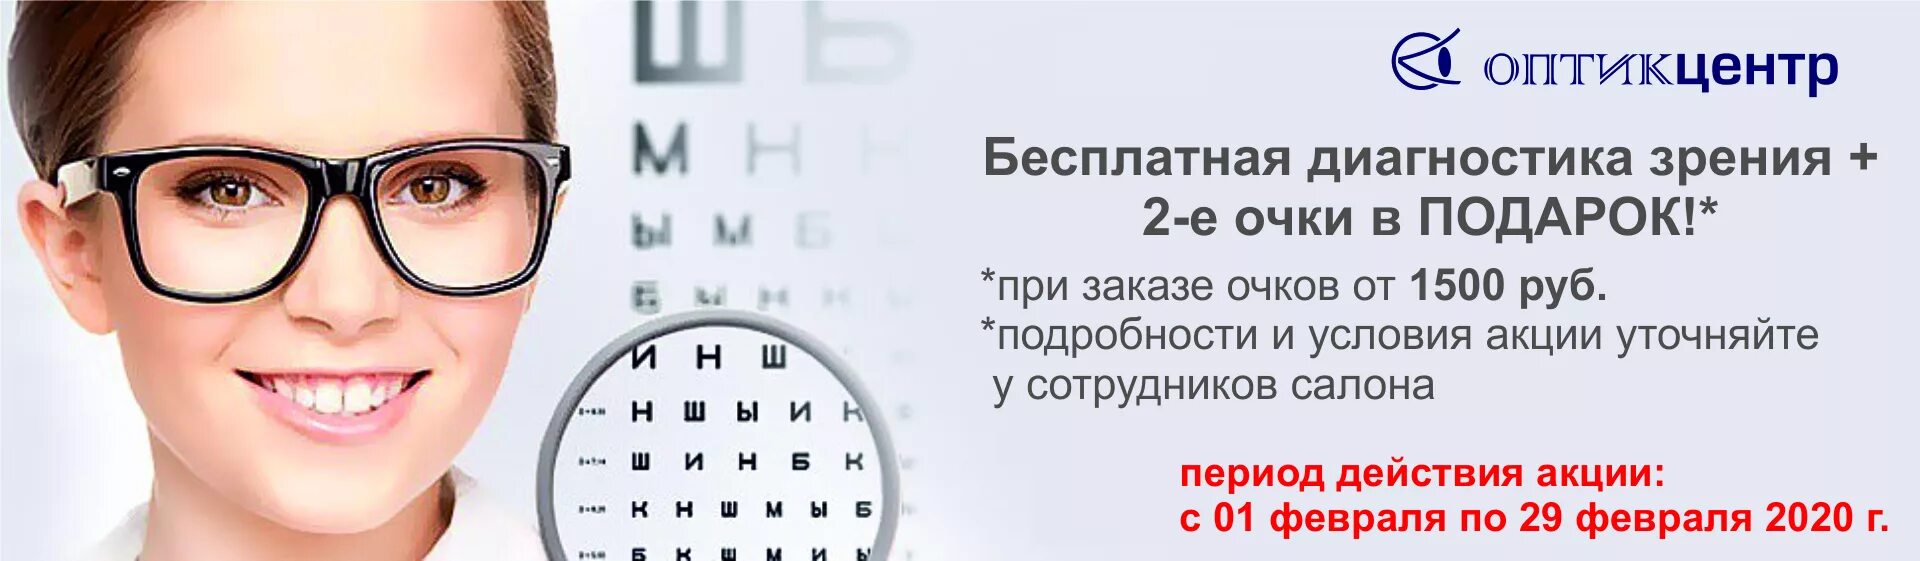 Зрение сайт новосибирск. Проверка зрения реклама. Очки для зрения баннер. Реклама очков для зрения. Очки офтальмолога.